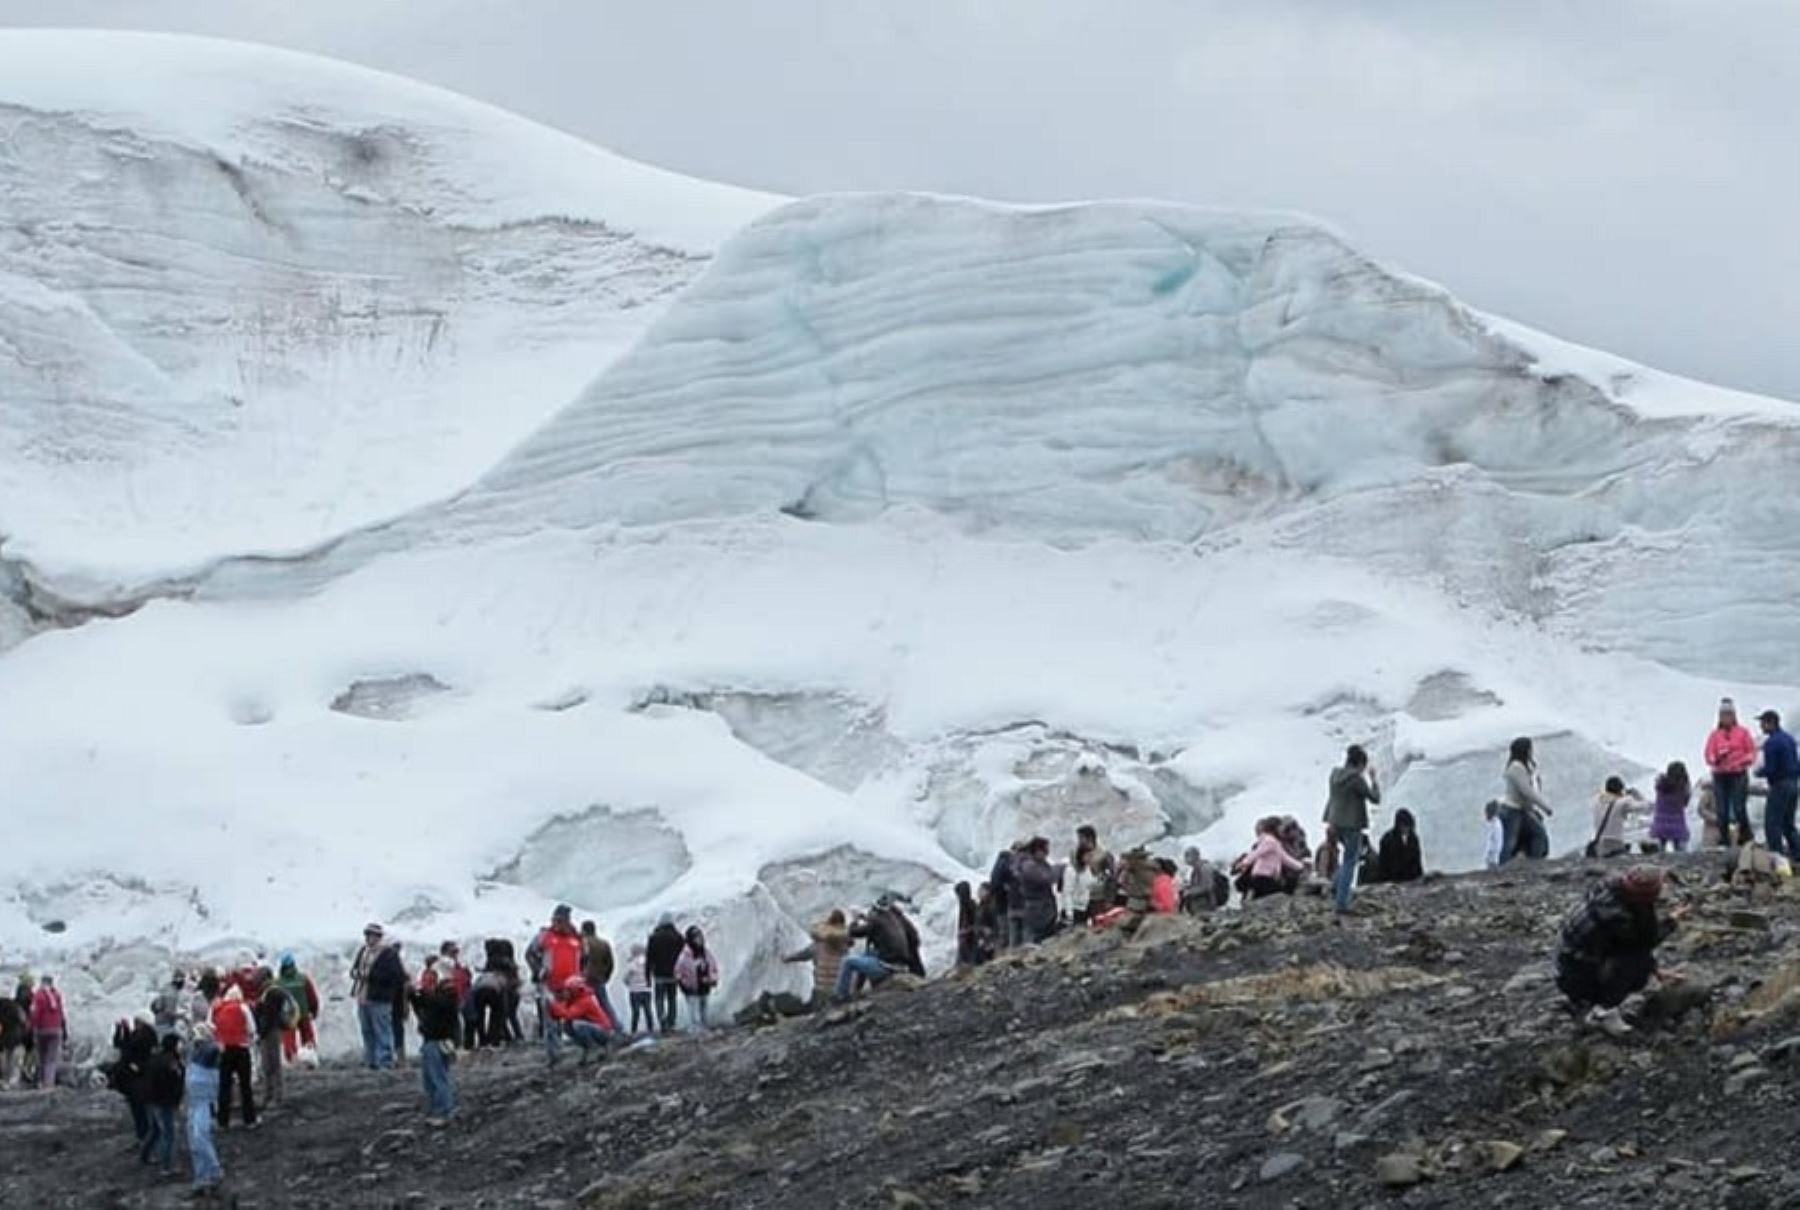 El glaciar Pastoruri es uno de los atractivos principales del Parque Nacional Huascarán, que celebra su 47 aniversario como área natural protegida en julio.  ANDINA/Difusión